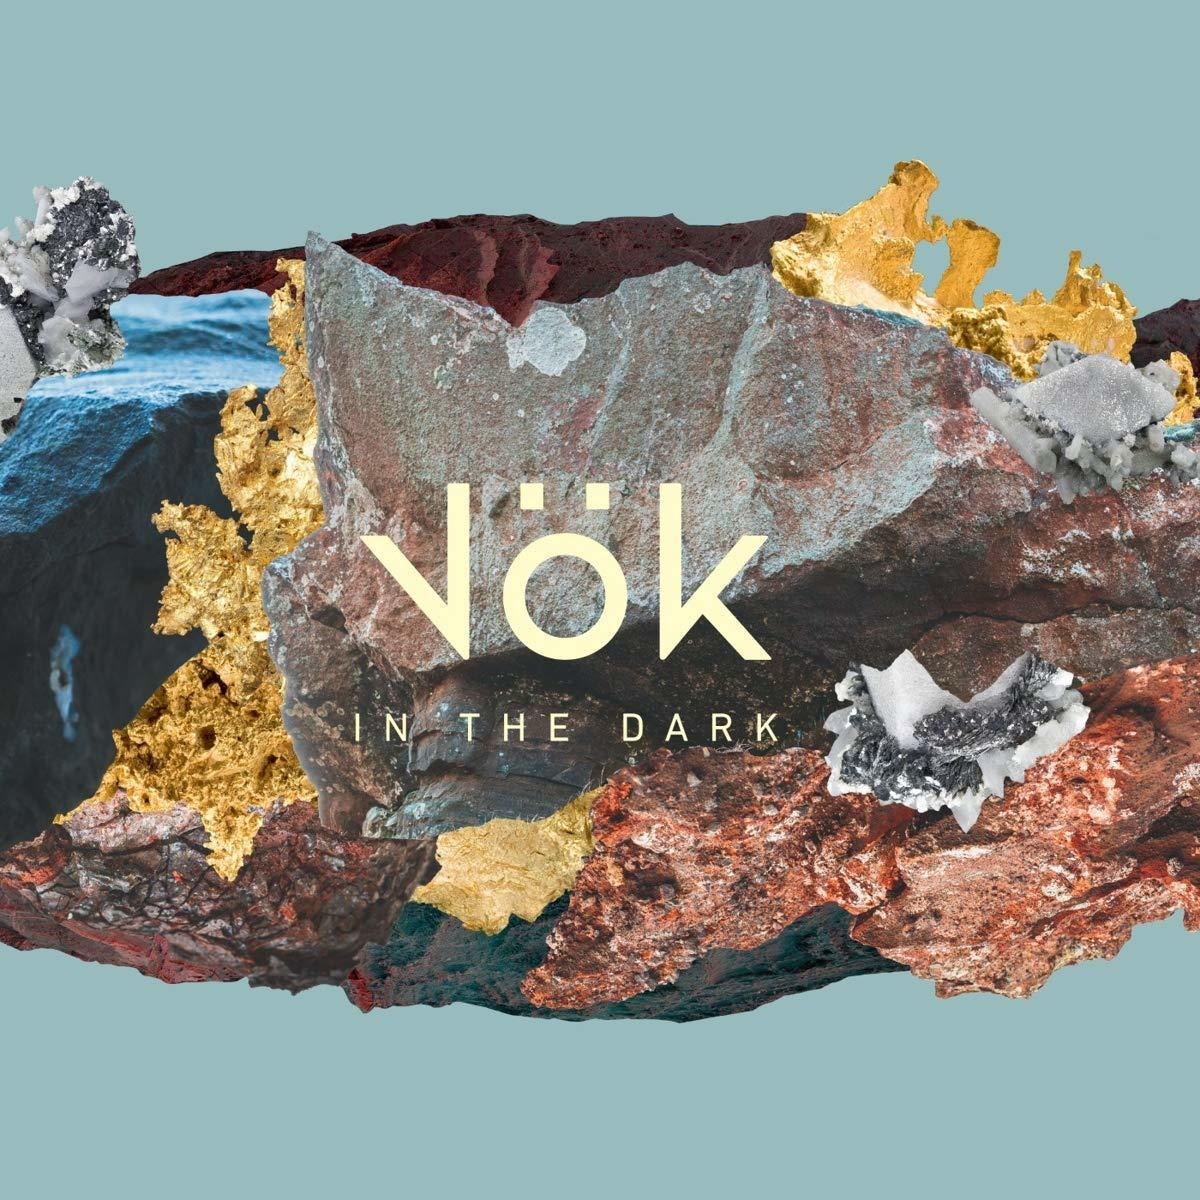 In the - - Vok Dark (CD)